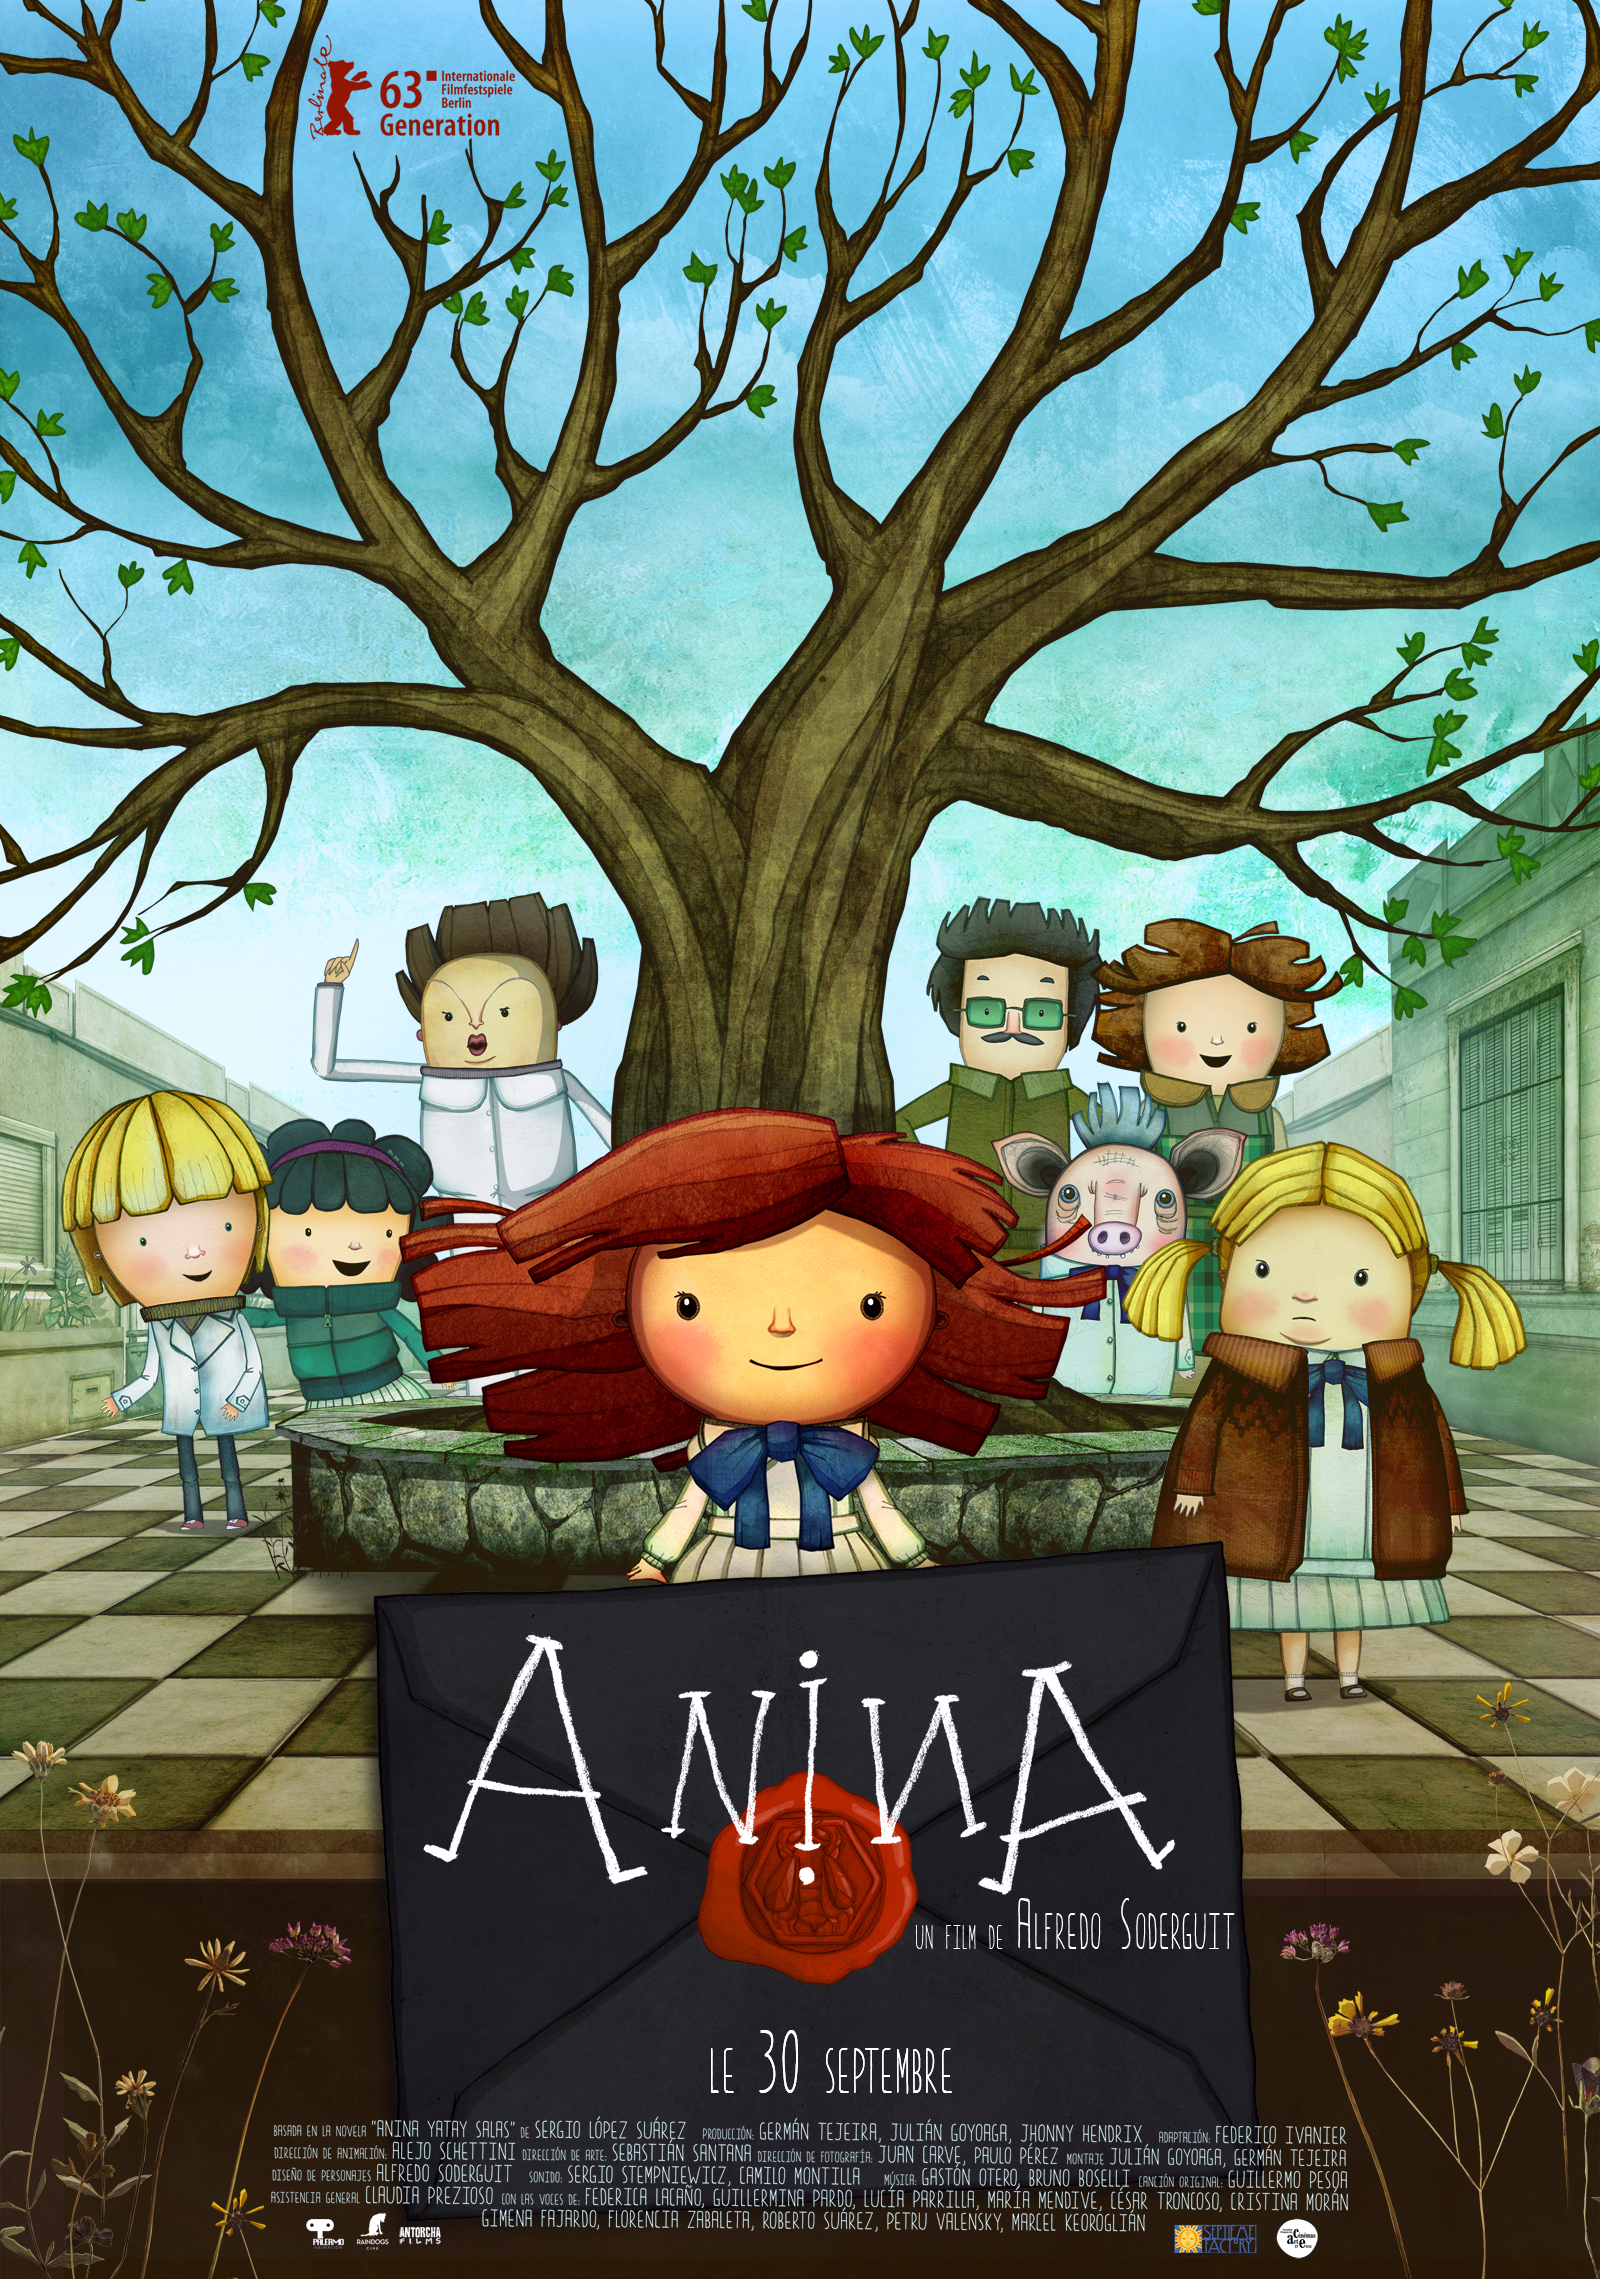 Anina, un film enchanteur | Expressions d'Enfants